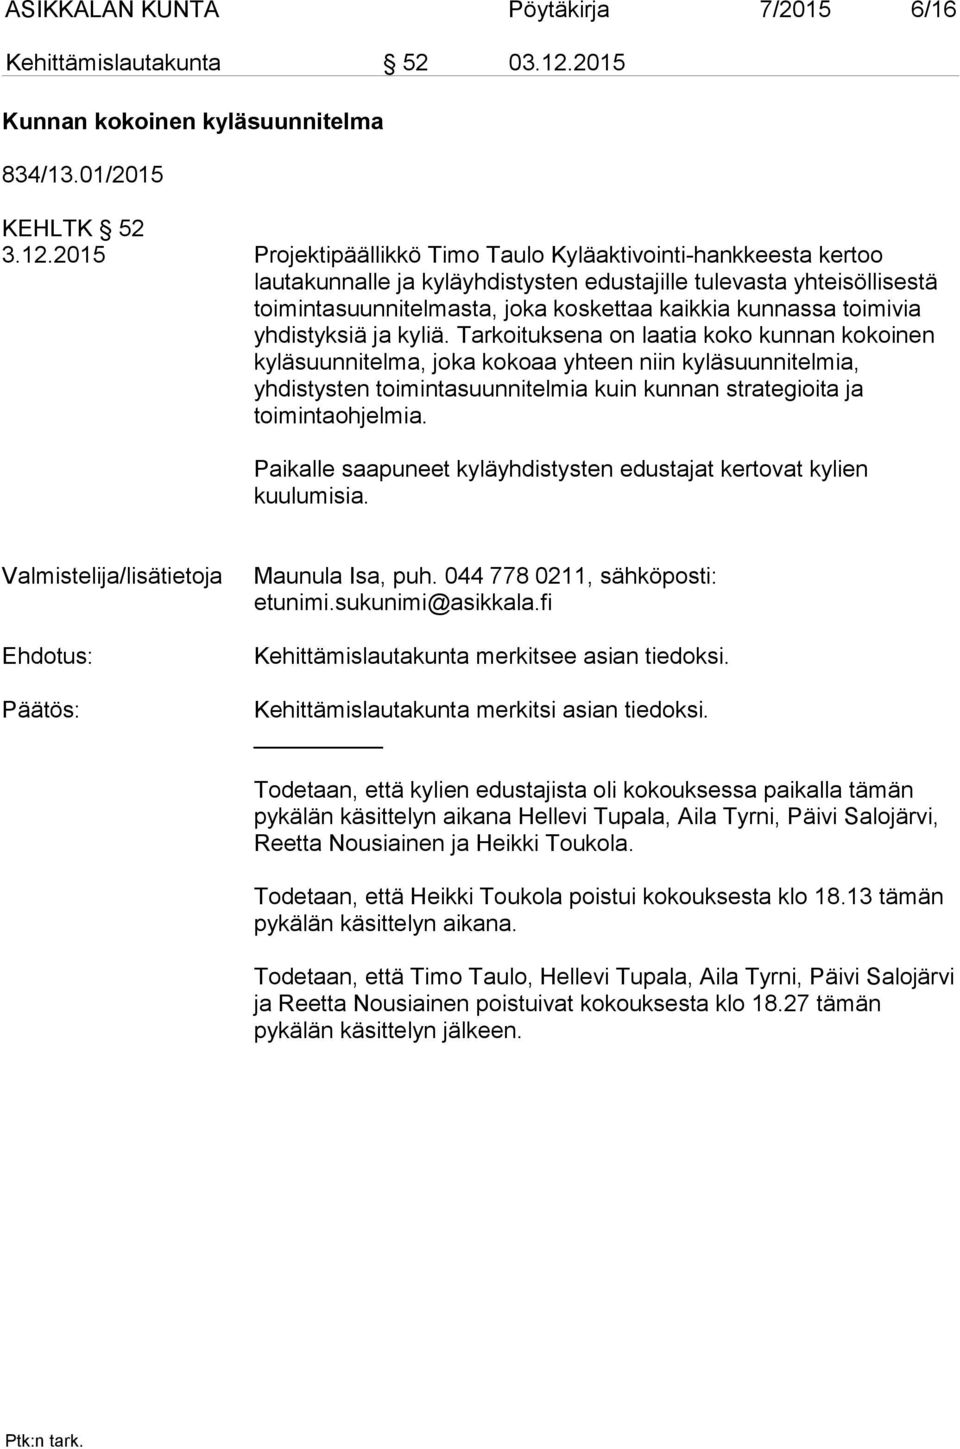 2015 Projektipäällikkö Timo Taulo Kyläaktivointi-hankkeesta kertoo lautakunnalle ja kyläyhdistysten edustajille tulevasta yhteisöllisestä toimintasuunnitelmasta, joka koskettaa kaikkia kunnassa